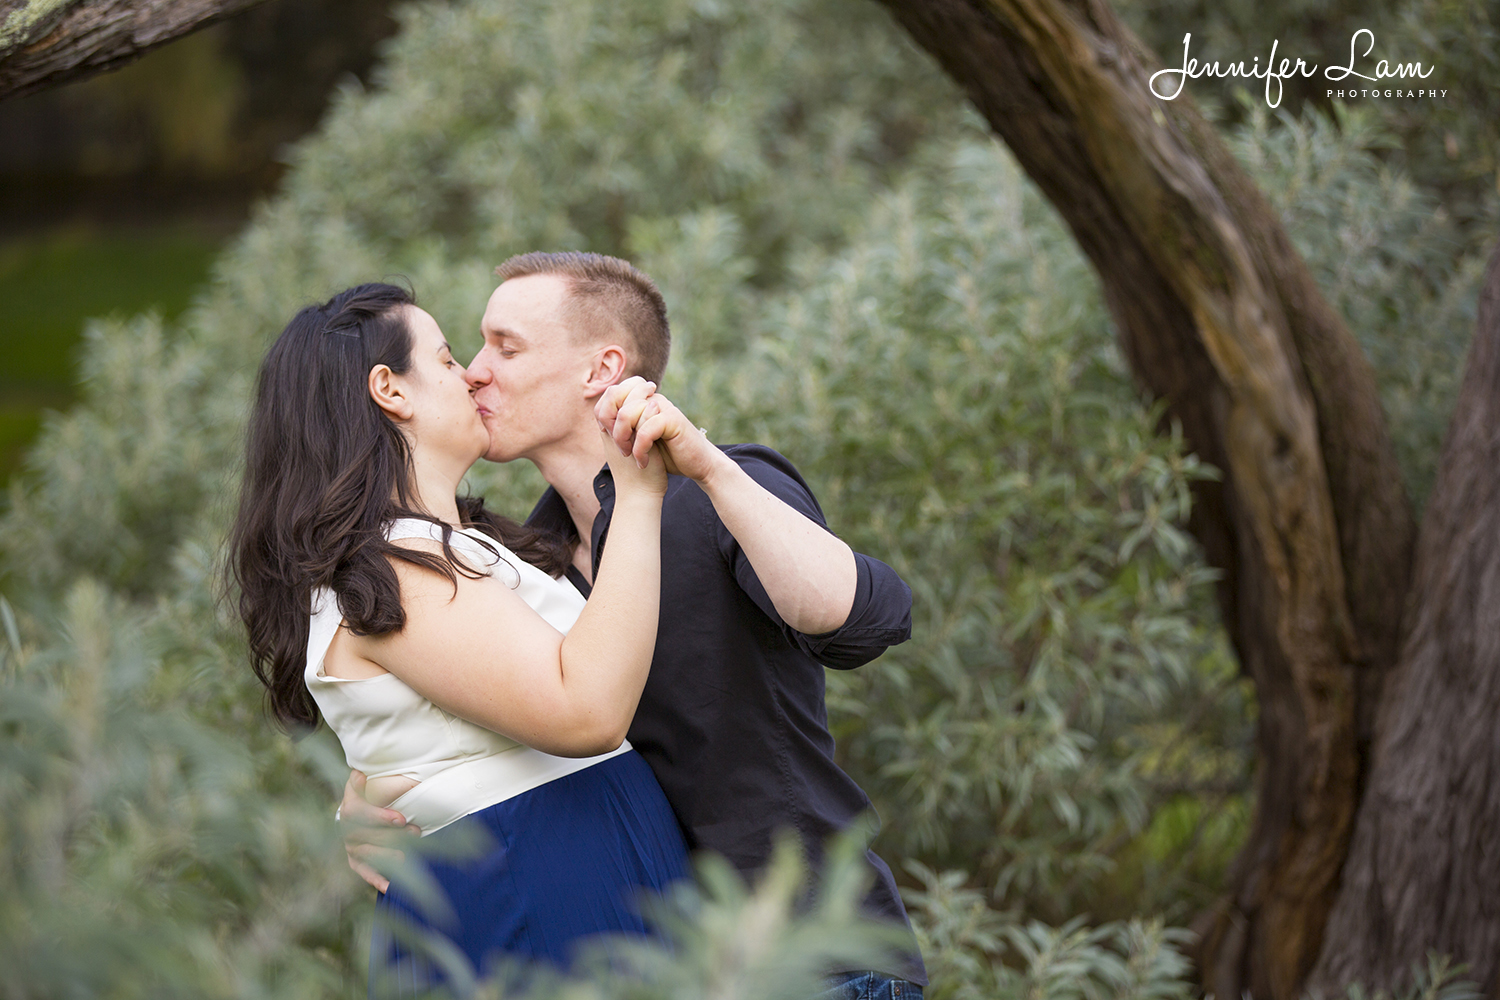 Engagement Session - Sydney Wedding Photographer - Jennifer Lam Photography (6).jpg